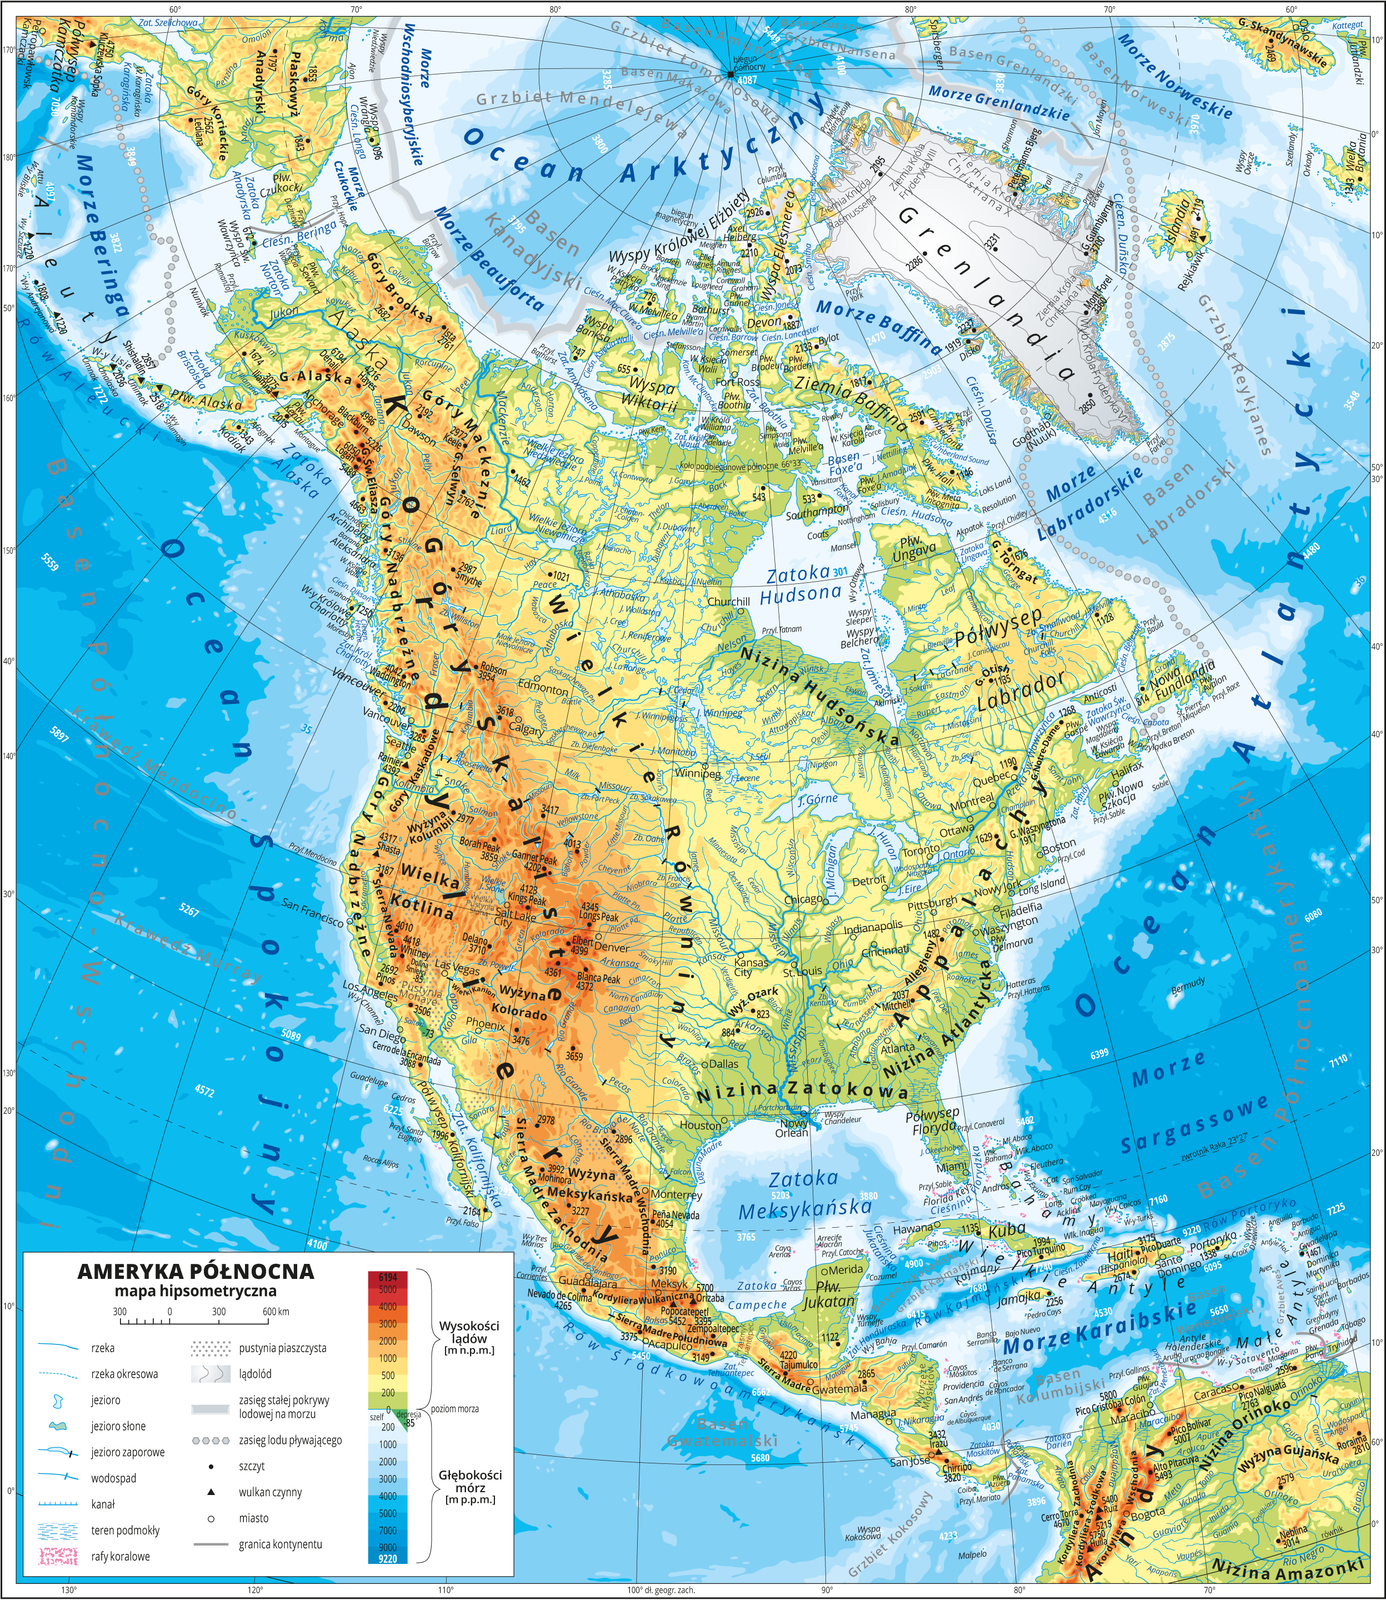 Ilustracja przedstawia mapę hipsometryczną Ameryki Południowej. W obrębie lądów występują obszary w kolorze zielonym, żółtym, pomarańczowym i czerwonym. Na zachodnim wybrzeżu dominują pasma górskie o przebiegu południkowym. Niziny wzdłuż północnych i wschodnich wybrzeży. Morza zaznaczono kolorem niebieskim. Na mapie opisano nazwy półwyspów, wysp, nizin, wyżyn i pasm górskich, mórz, zatok, rzek i jezior. Oznaczono i opisano główne miasta. Oznaczono czarnymi kropkami i opisano szczyty górskie. Trójkątami oznaczono czynne wulkany i podano ich nazwy i wysokości. Mapa pokryta jest równoleżnikami i południkami. Dookoła mapy w białej ramce opisano współrzędne geograficzne co dziesięć stopni. W legendzie umieszczono i opisano znaki użyte na mapie.